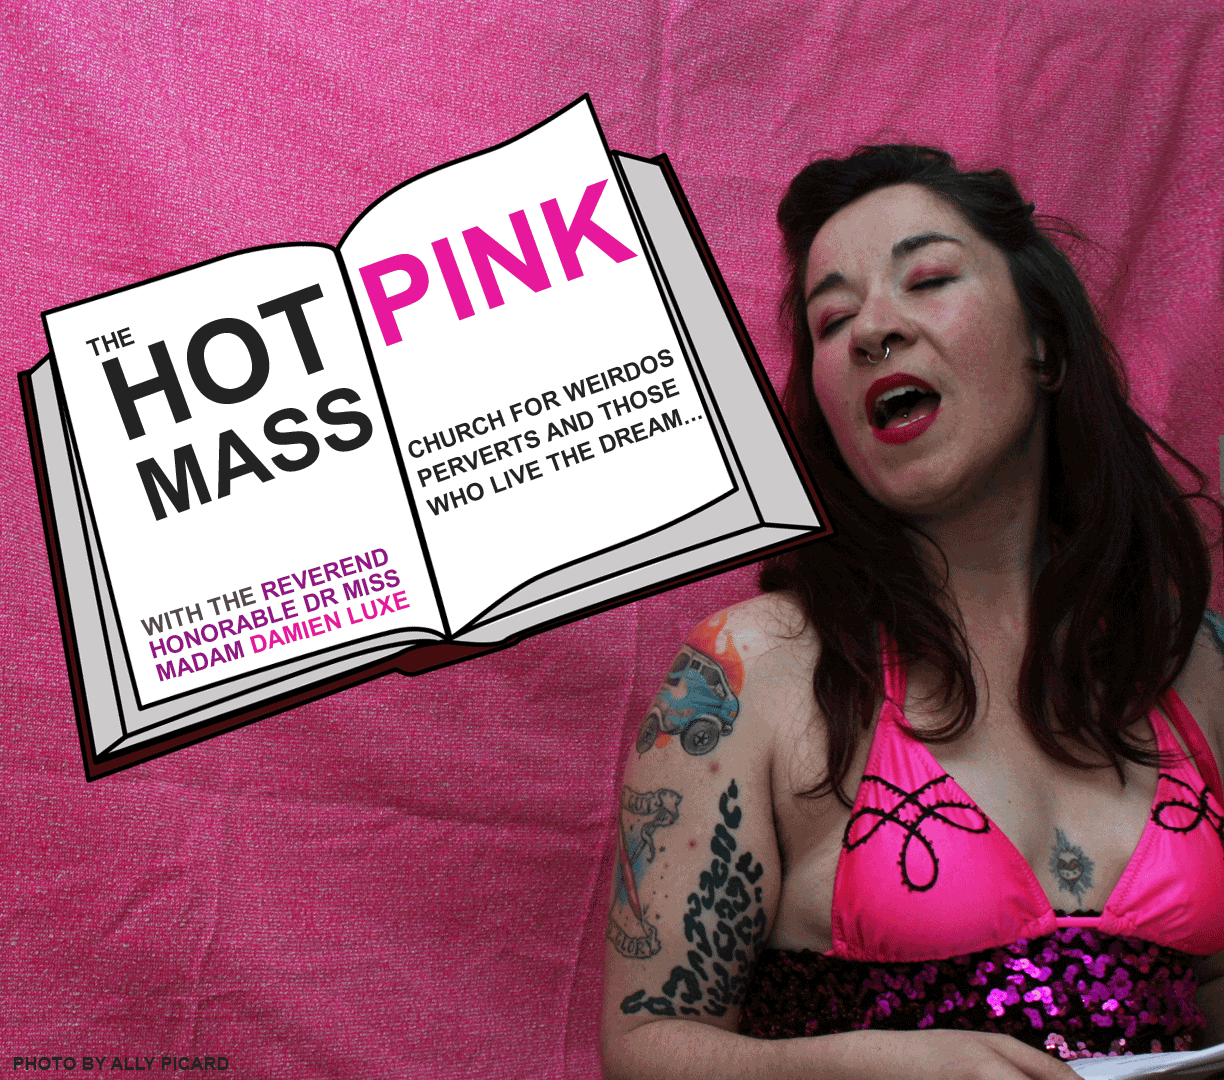 Hot Pink Mass flyer